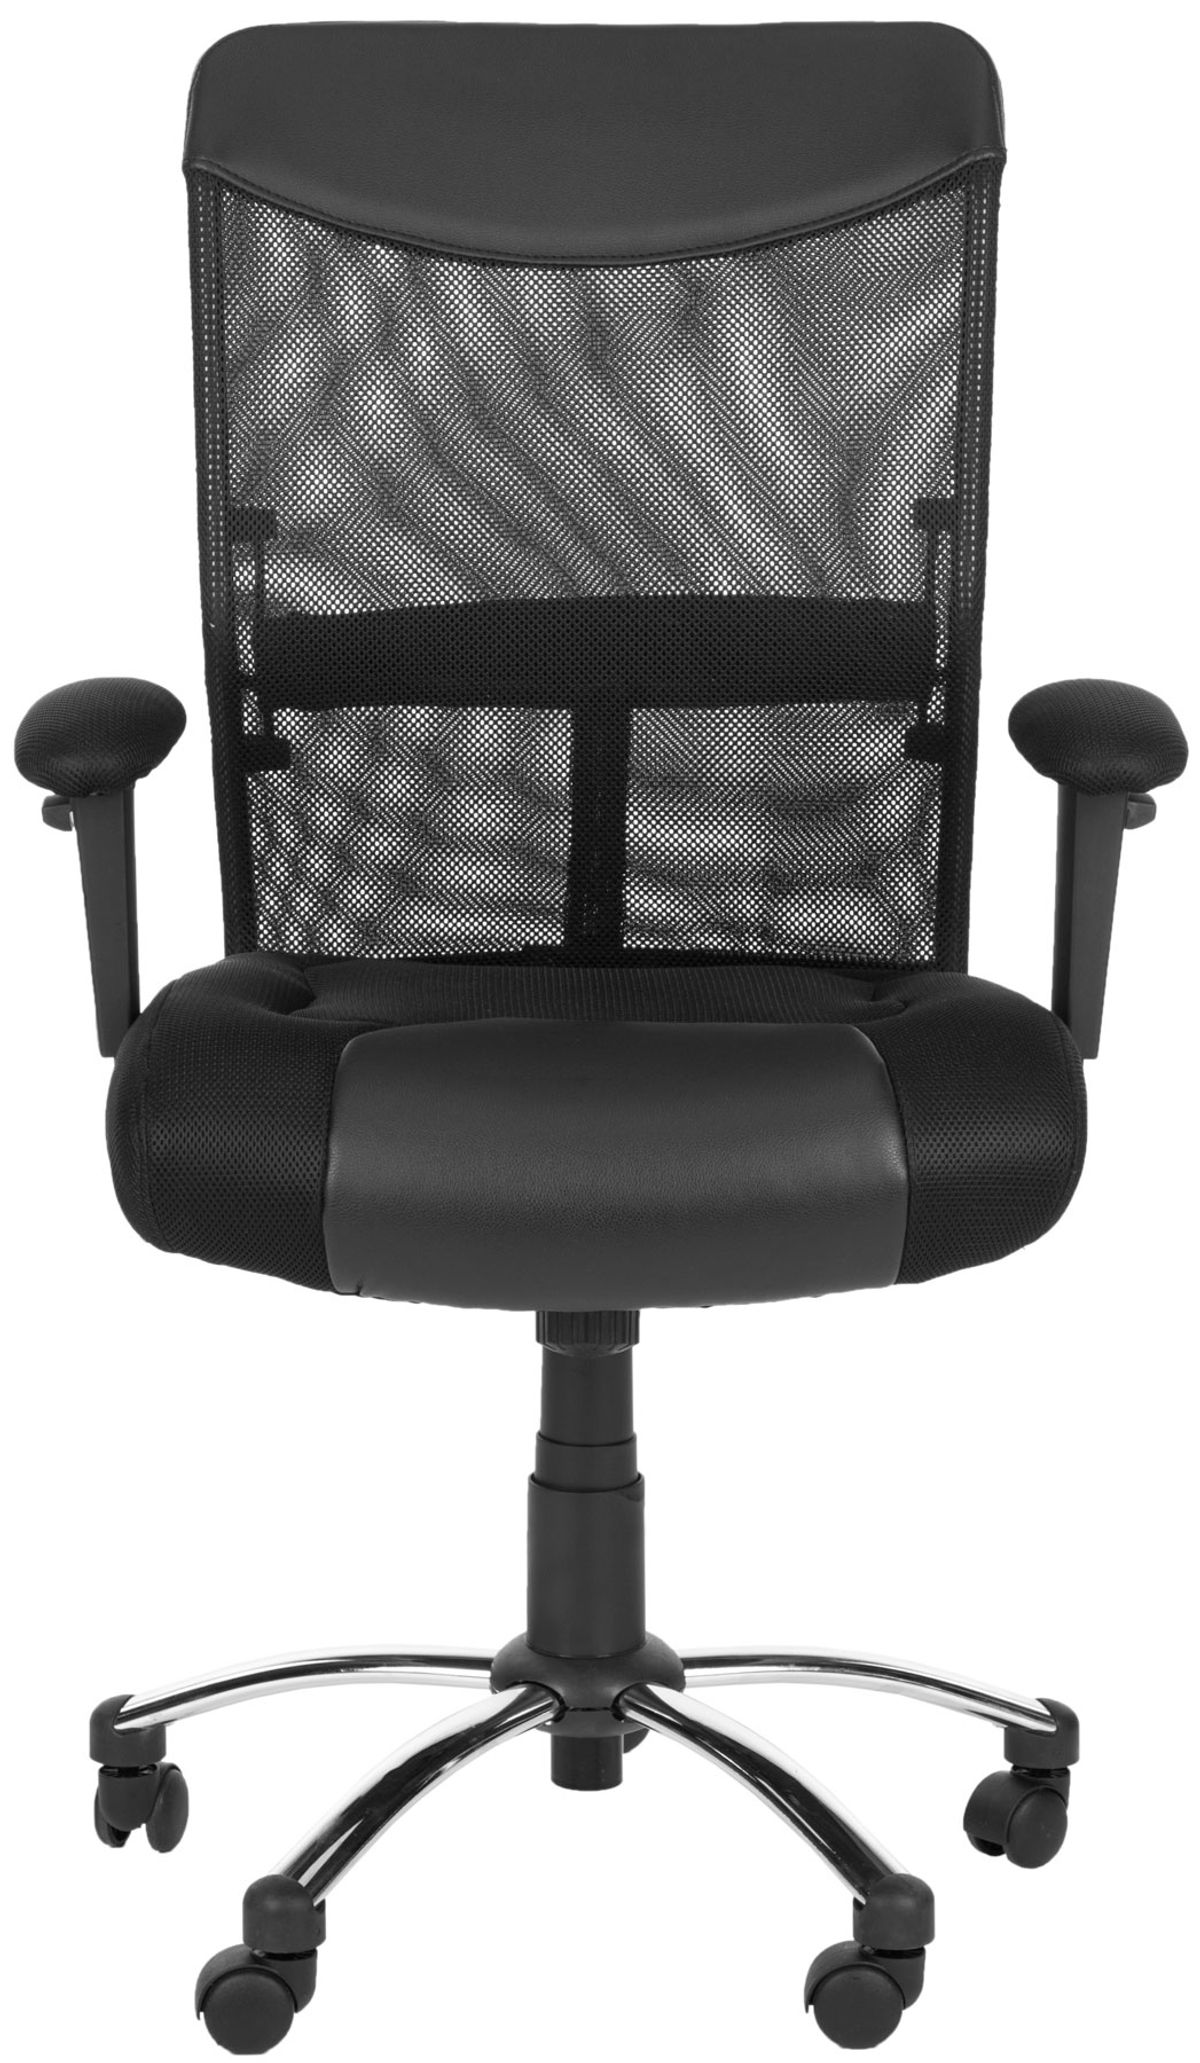 Shop Bernard Desk Chair, 26" X 38.2" from DiMare Design on Openhaus